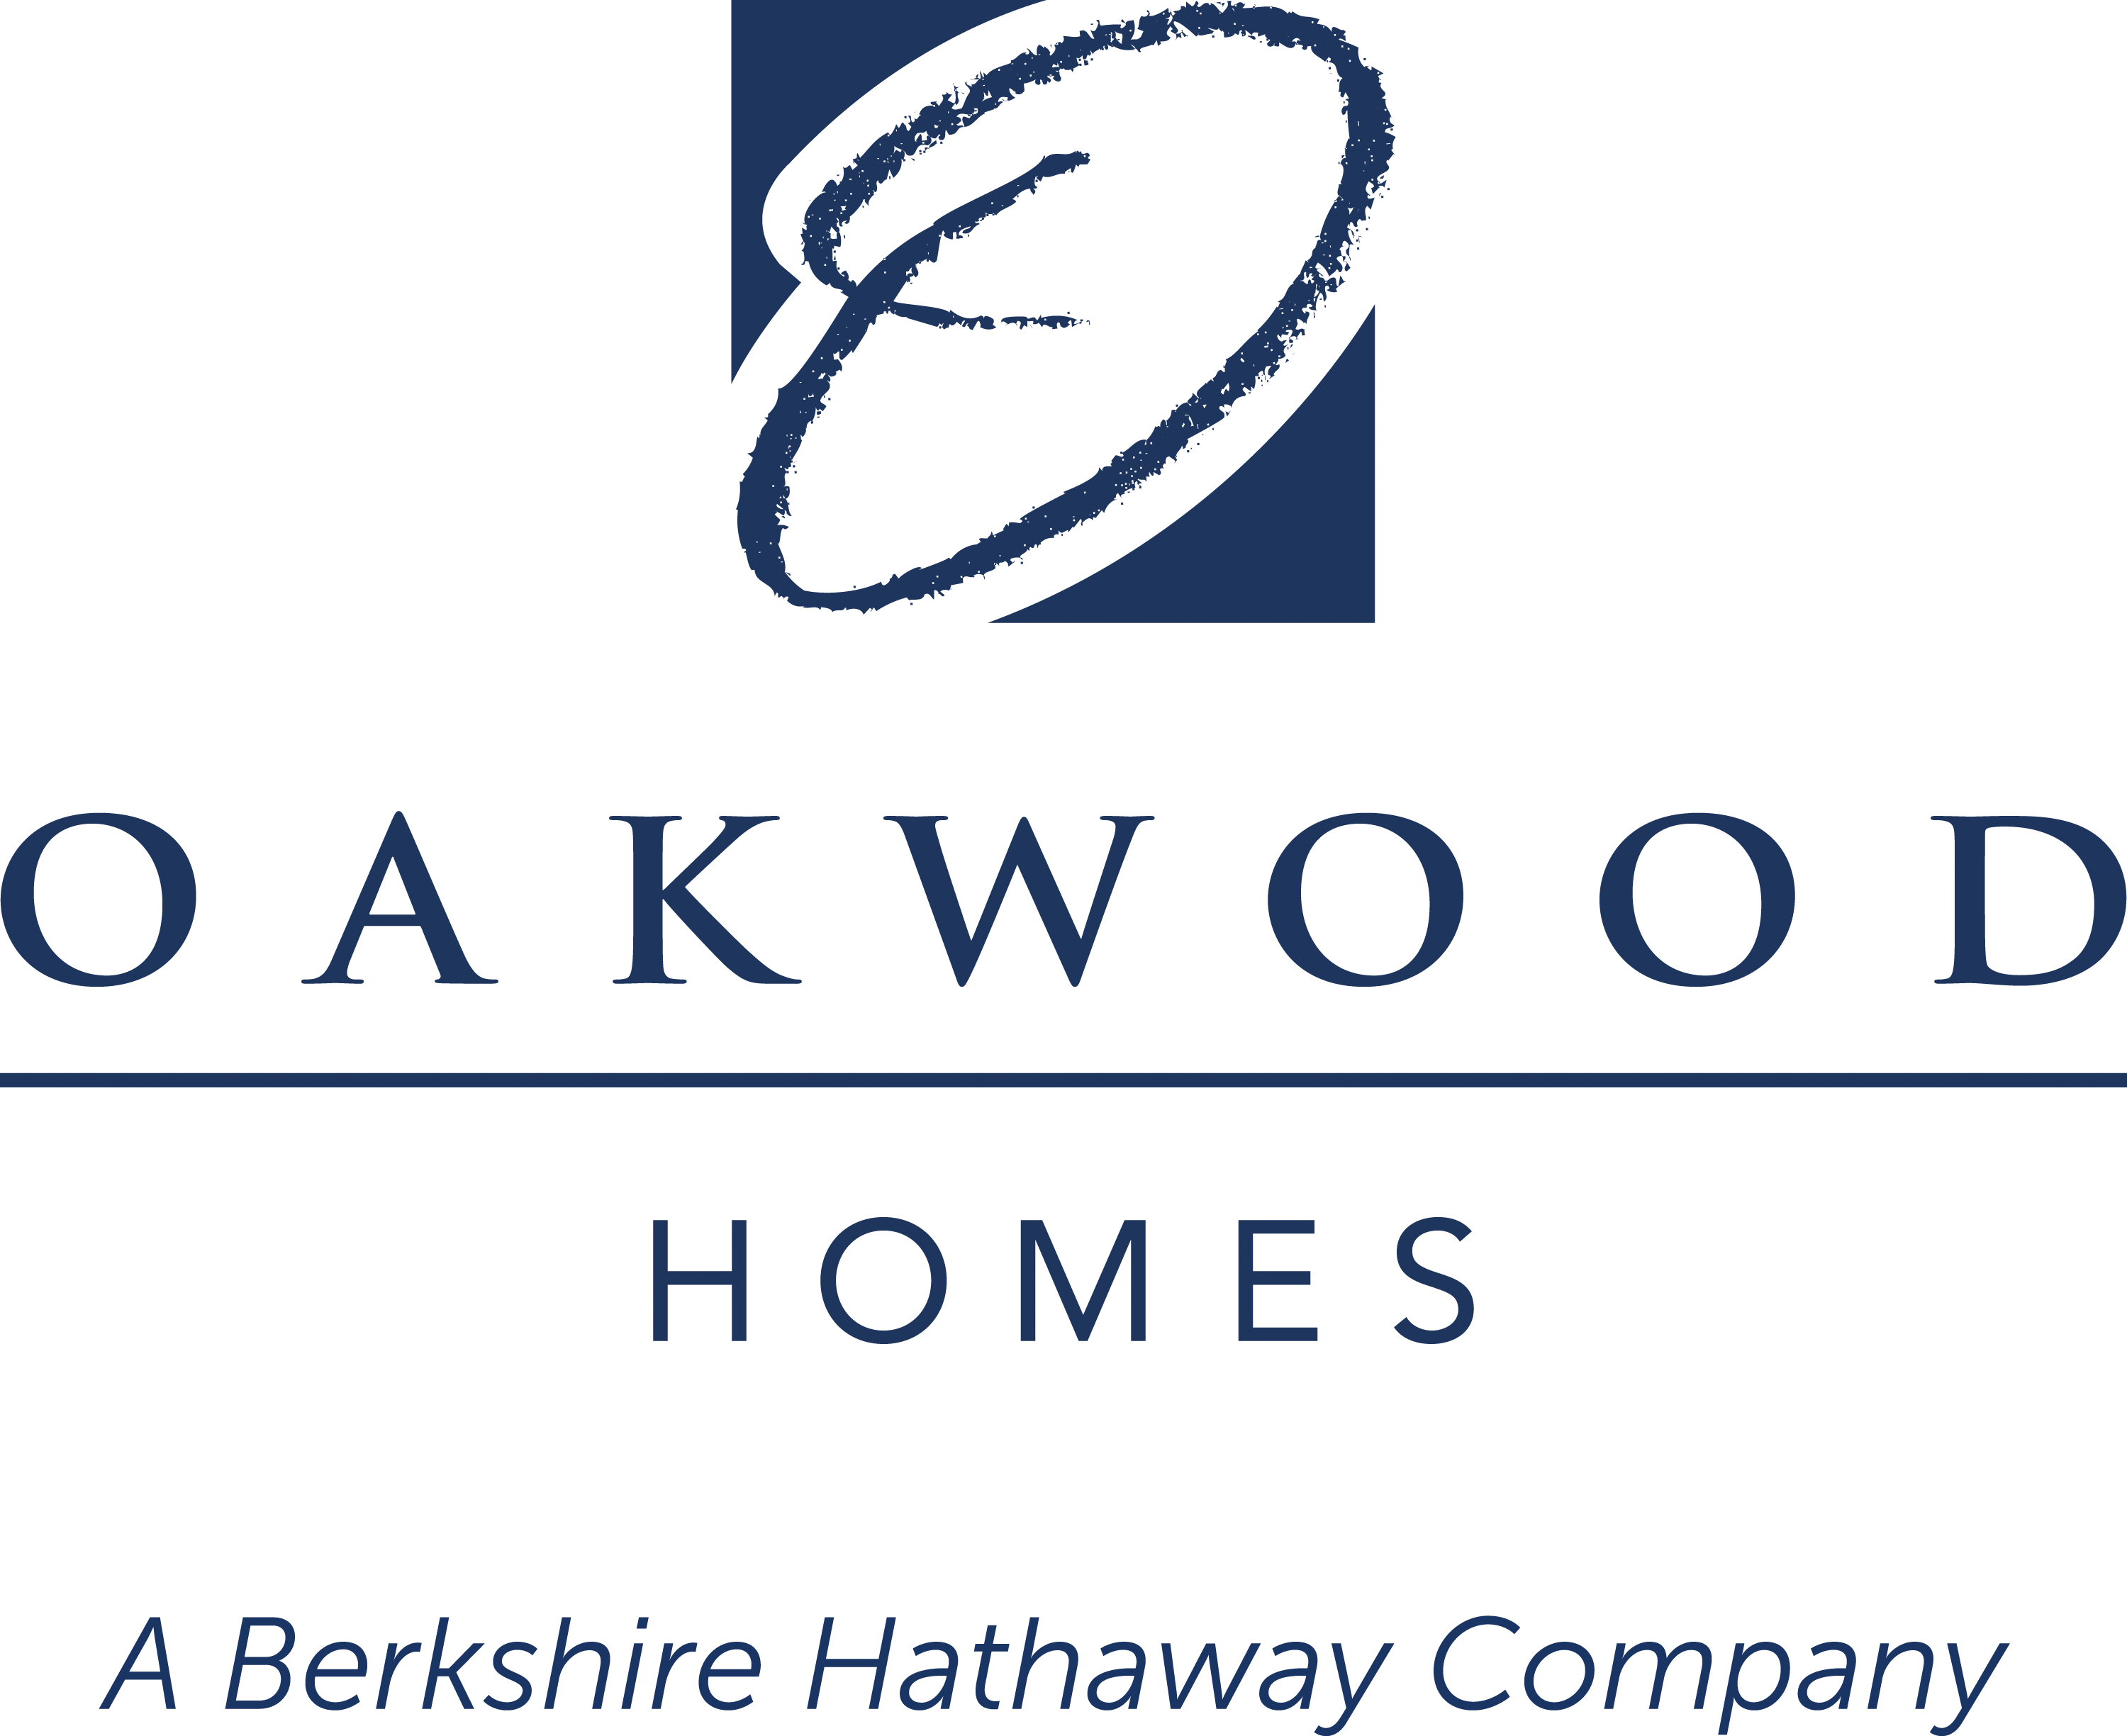 Oakwood Homes logo